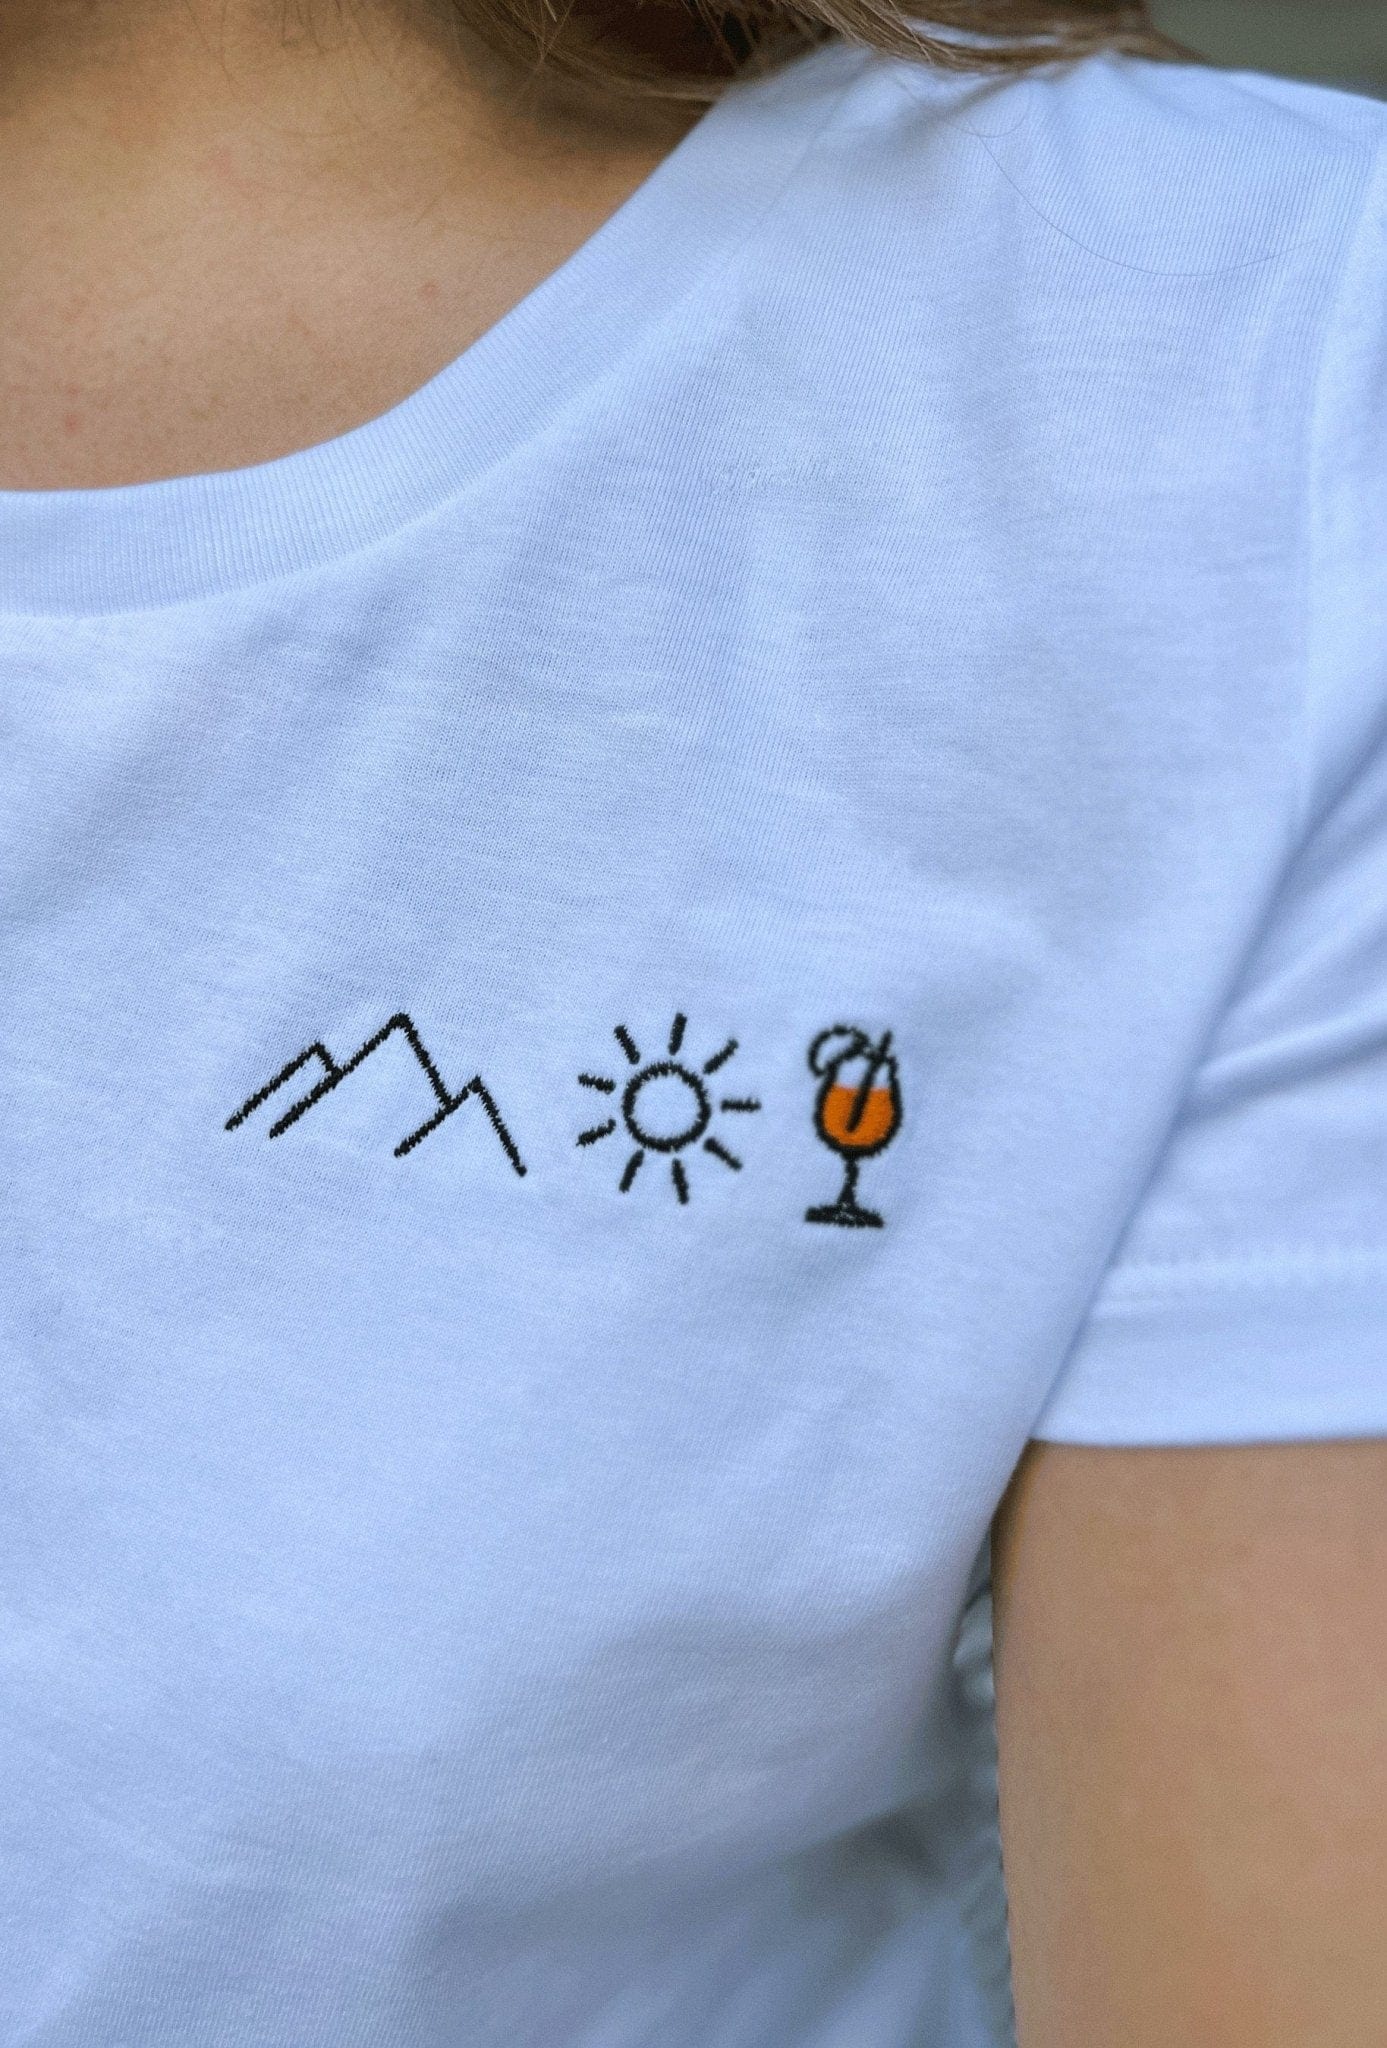 Berg Sonne Spritz (Stick) - Damen Premium Organic Shirt von Bergmensch